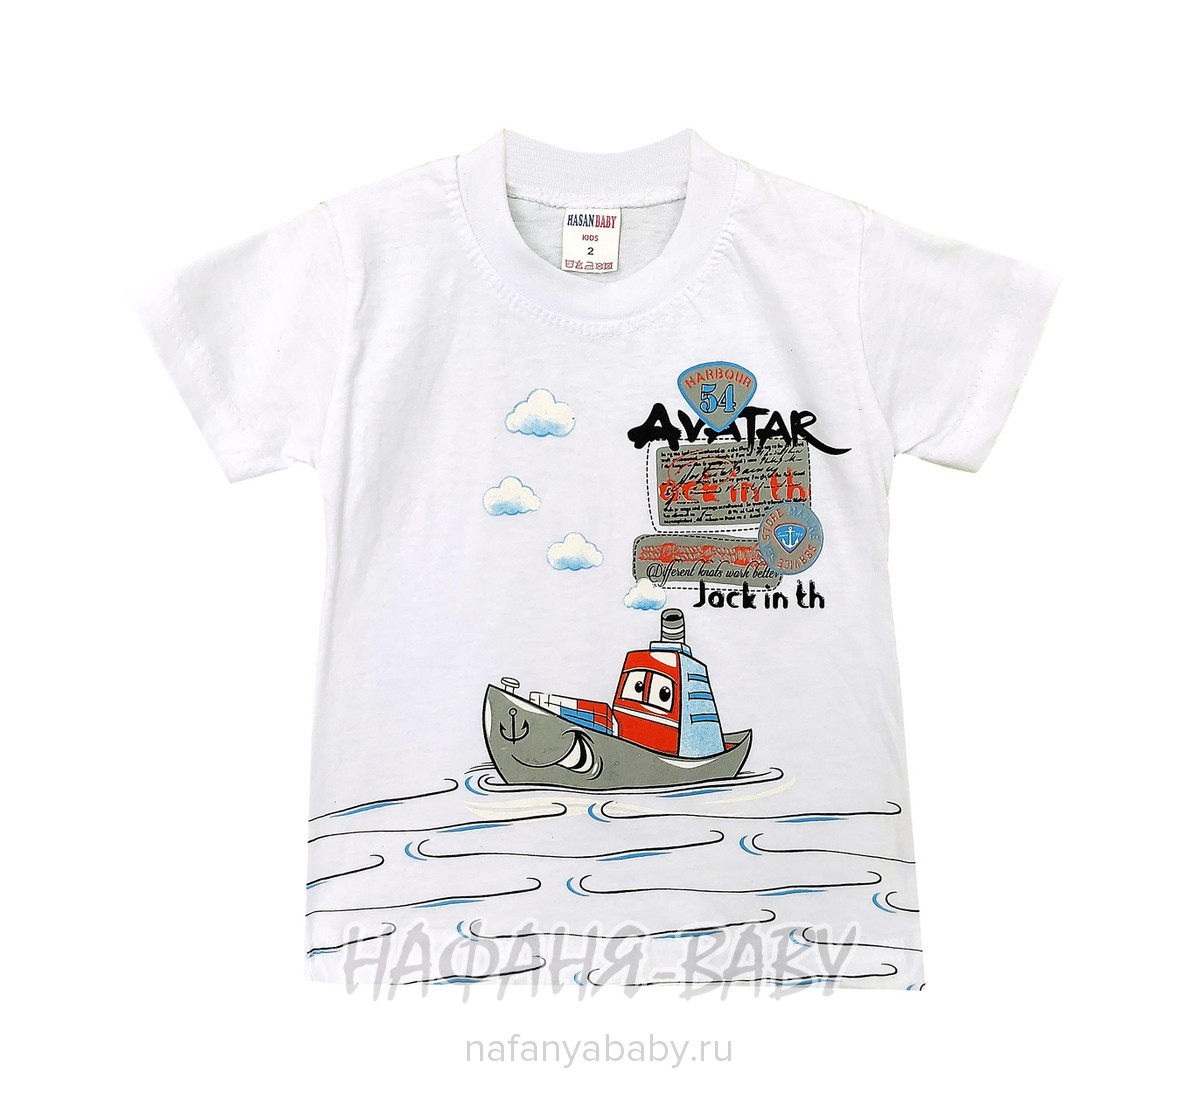 Детская футболка HASAN Bebe арт: 6213, 1-4 года, оптом Турция